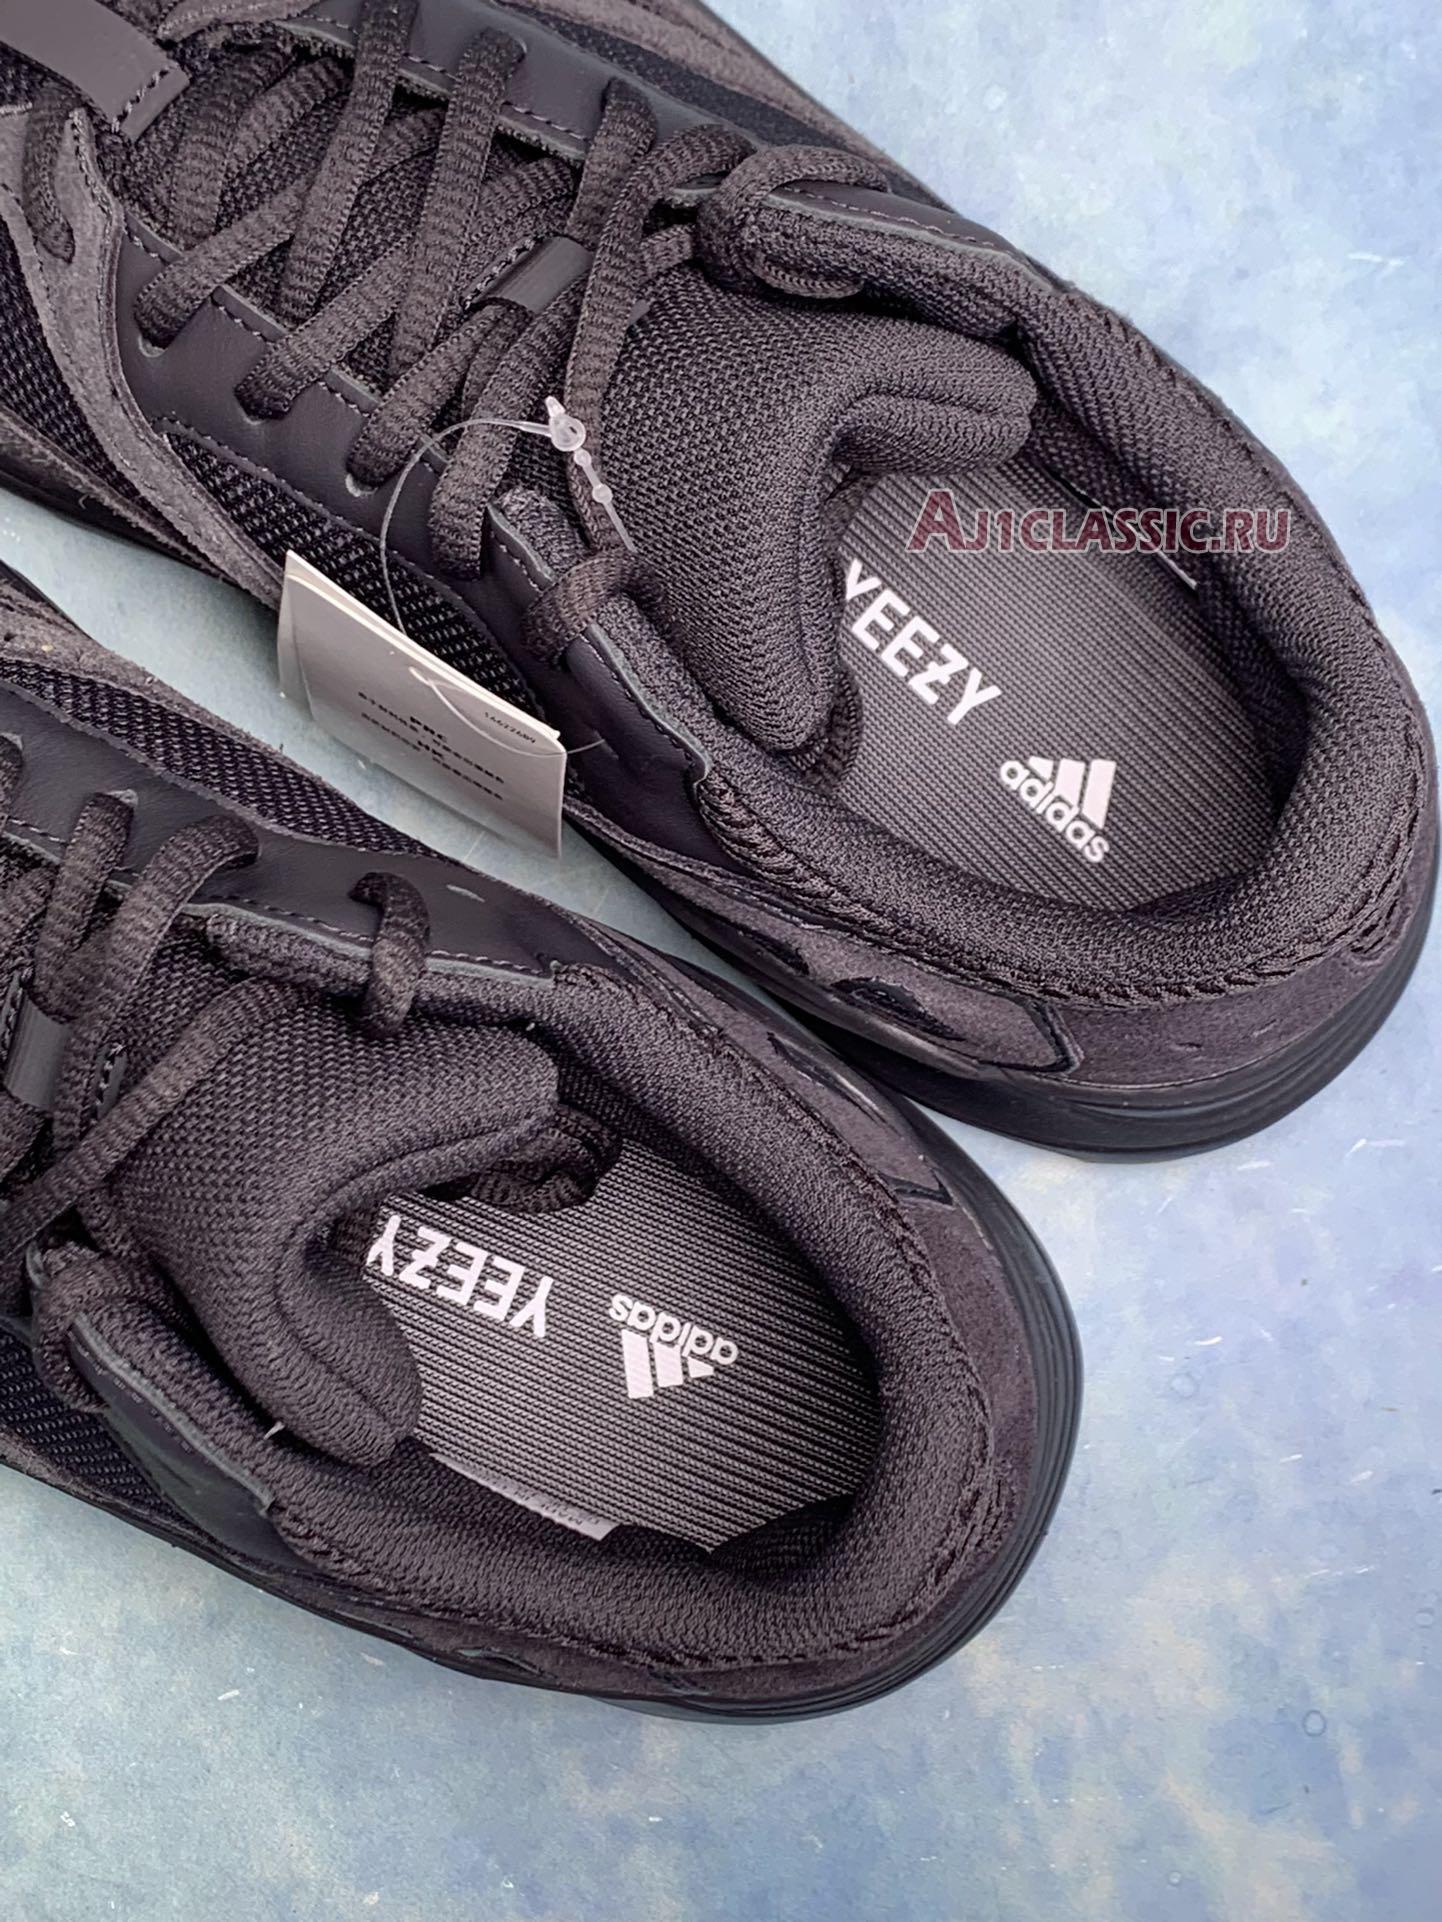 Adidas Yeezy Boost 700 "Utility Black" FV5304-2